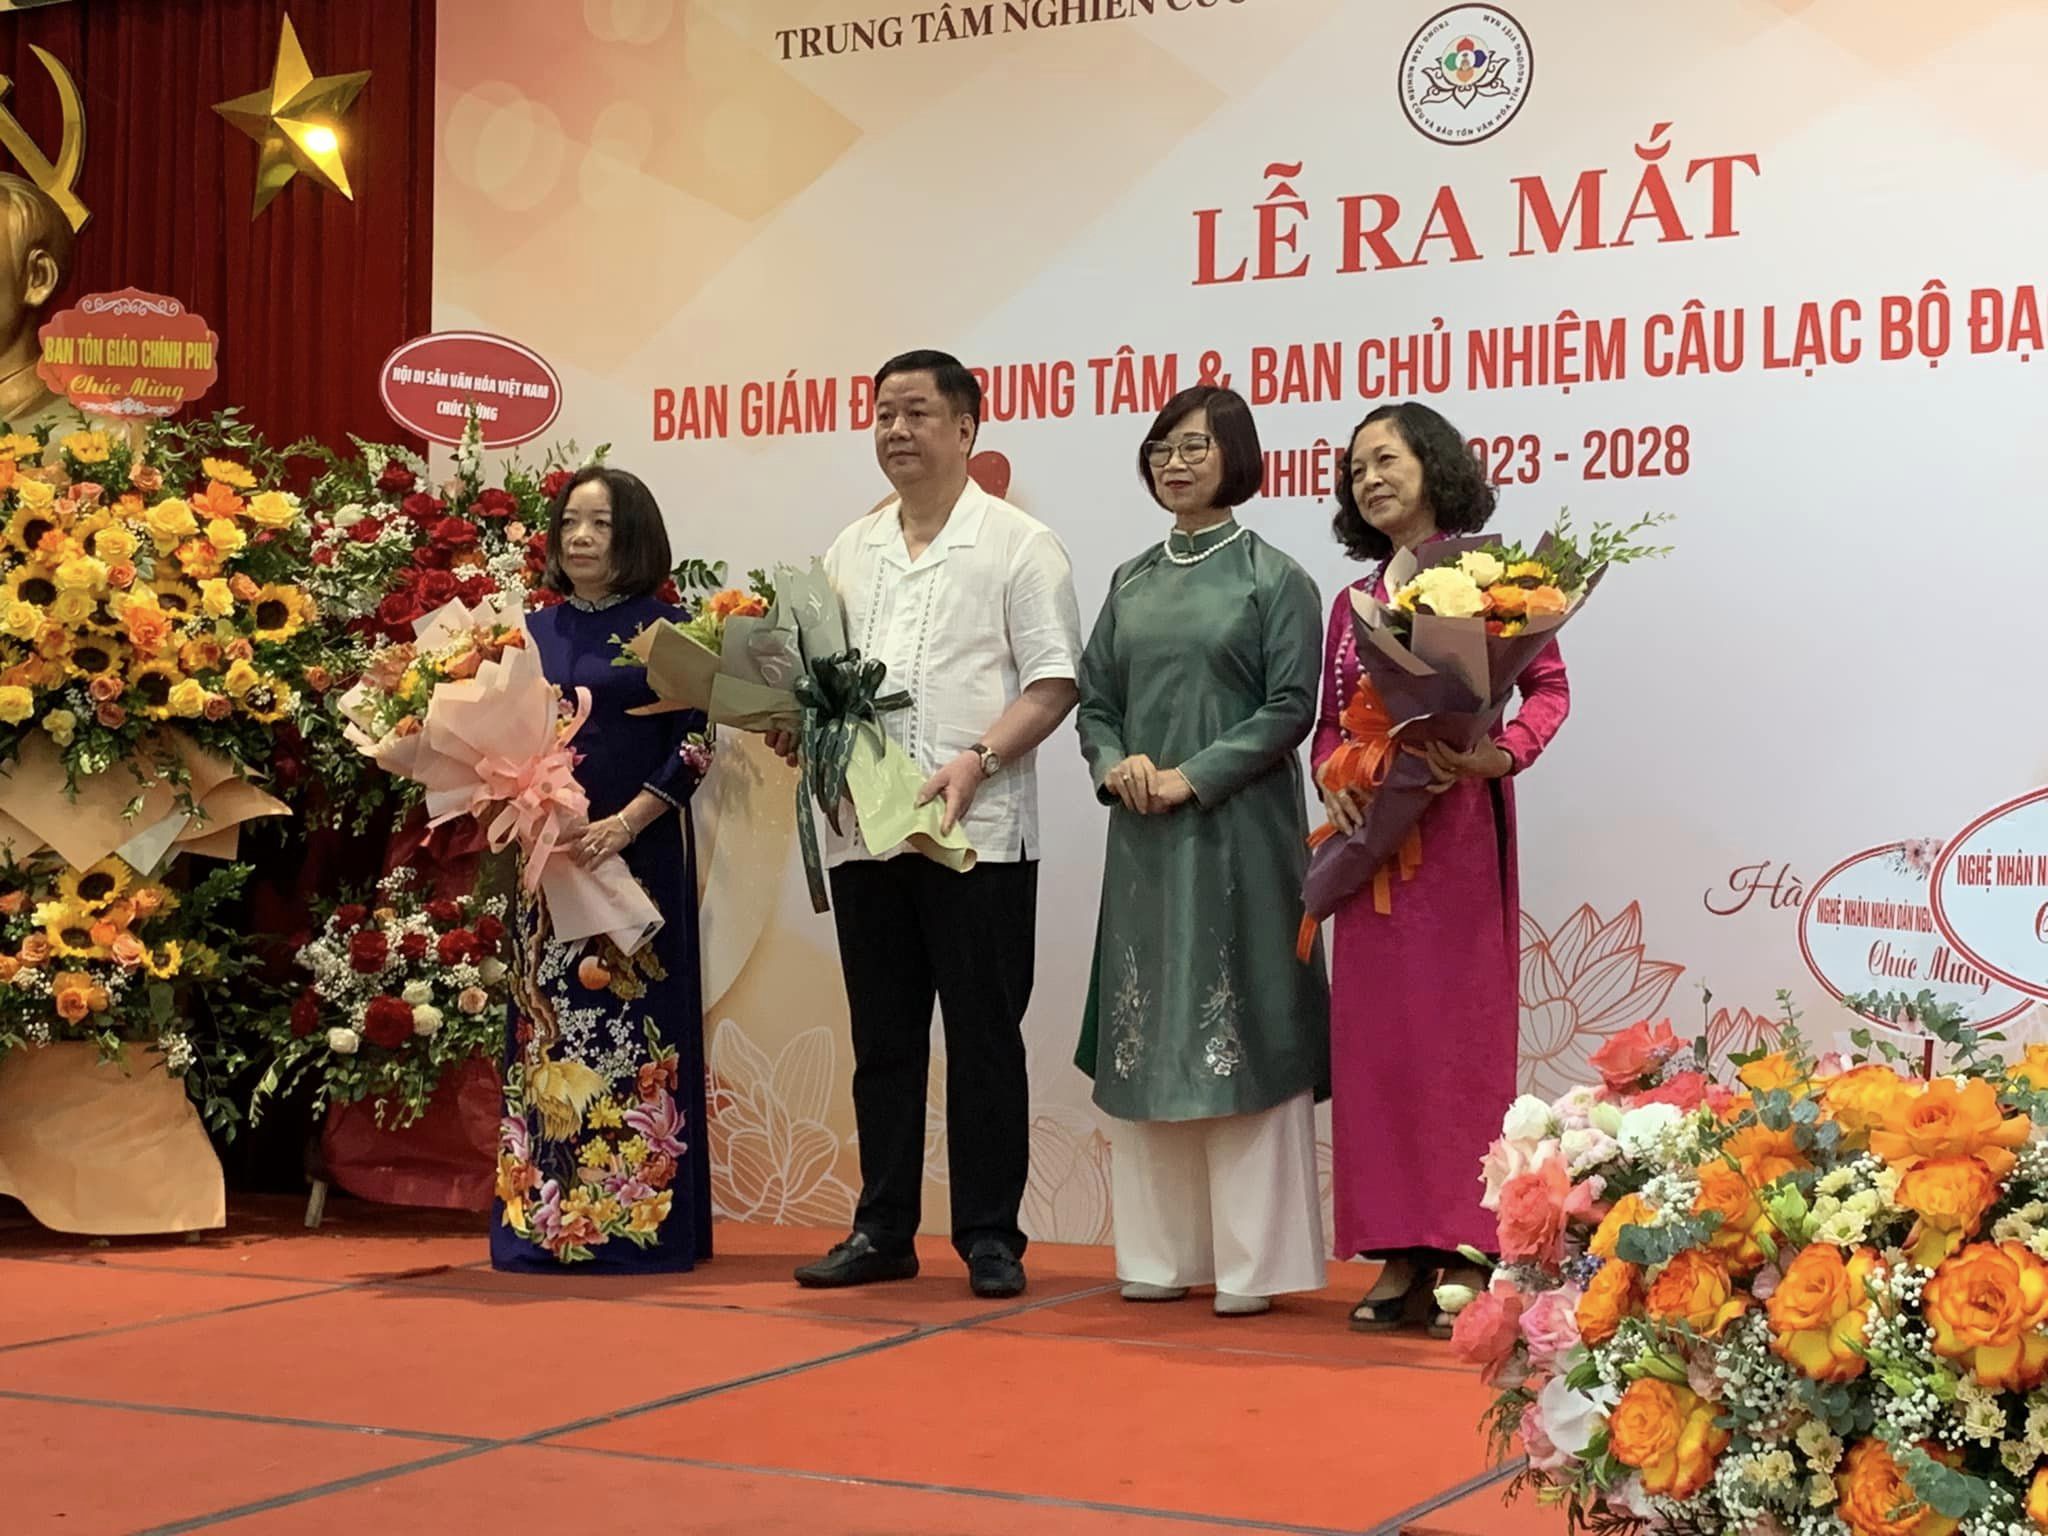 Lễ ra mắt Ban Giám đốc Trung tâm và Ban Chủ nhiệm Câu lạc bộ Đạo Mẫu Việt Nam, nhiệm kỳ 2023-2028